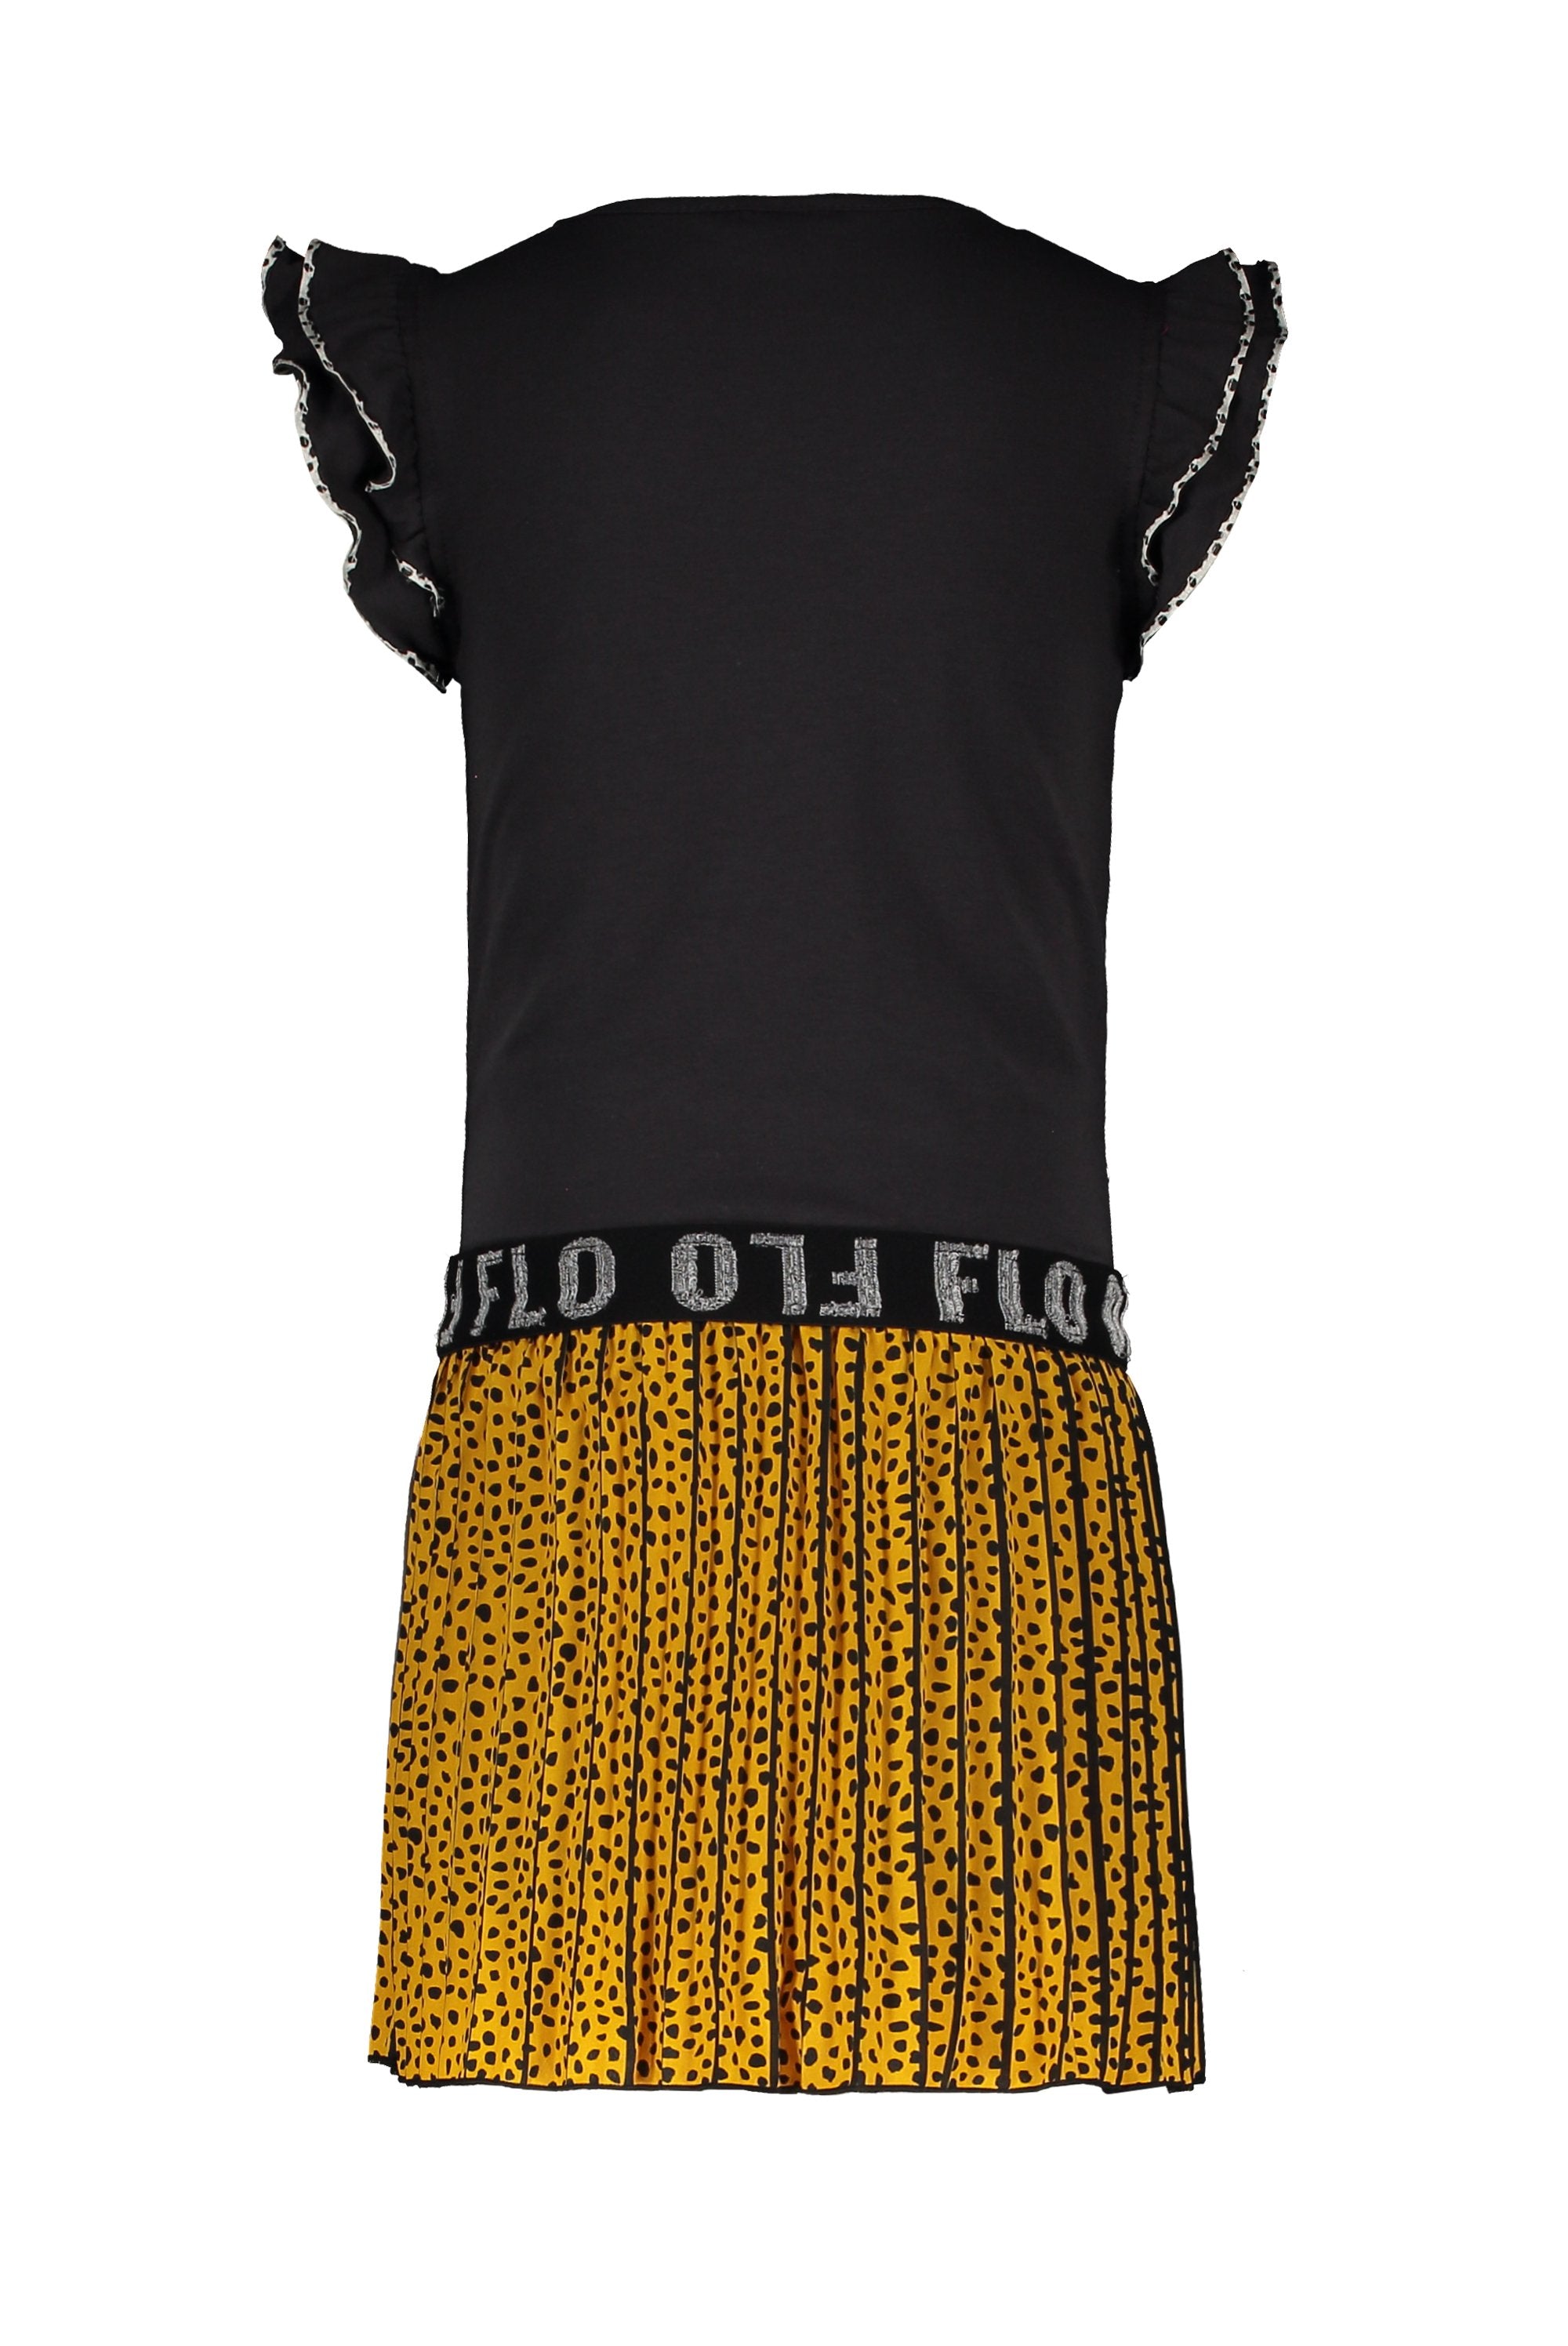 Meisjes Flo girls ruffle jersey dress with AO oker plisse skirt van Flo in de kleur Oker in maat 152.